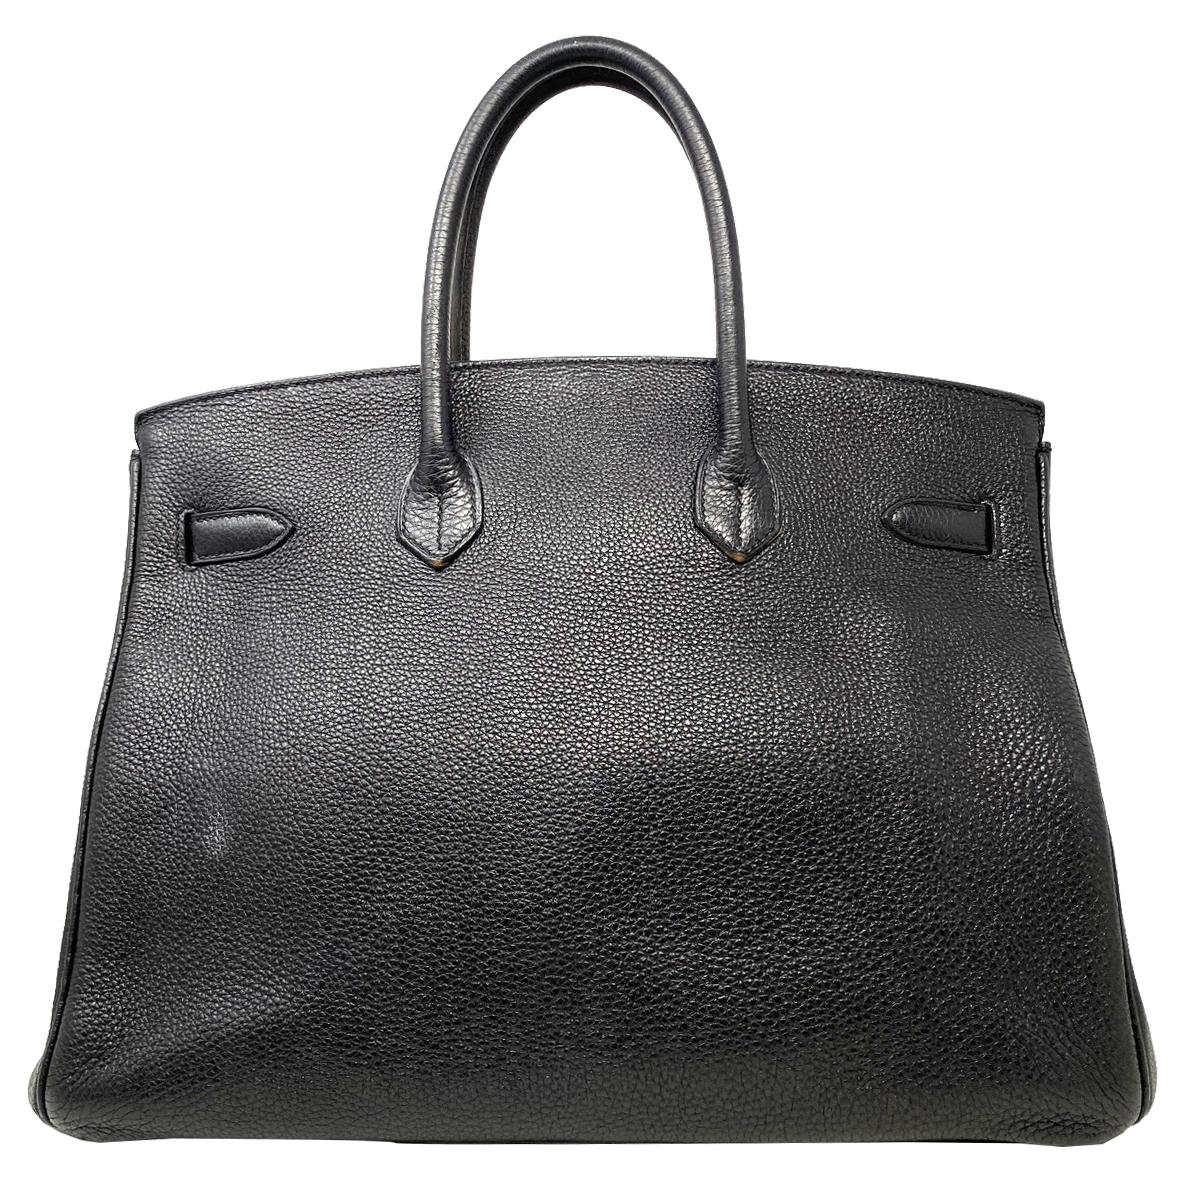 Company-Hermes 
Model-Hermes Birkin 35 Bag Togo Black Leather Palladium Hardware Top Handle Handbag 
Color-Black
Date Code-CO147
Material-Black Togo Leather 
Measurements-14